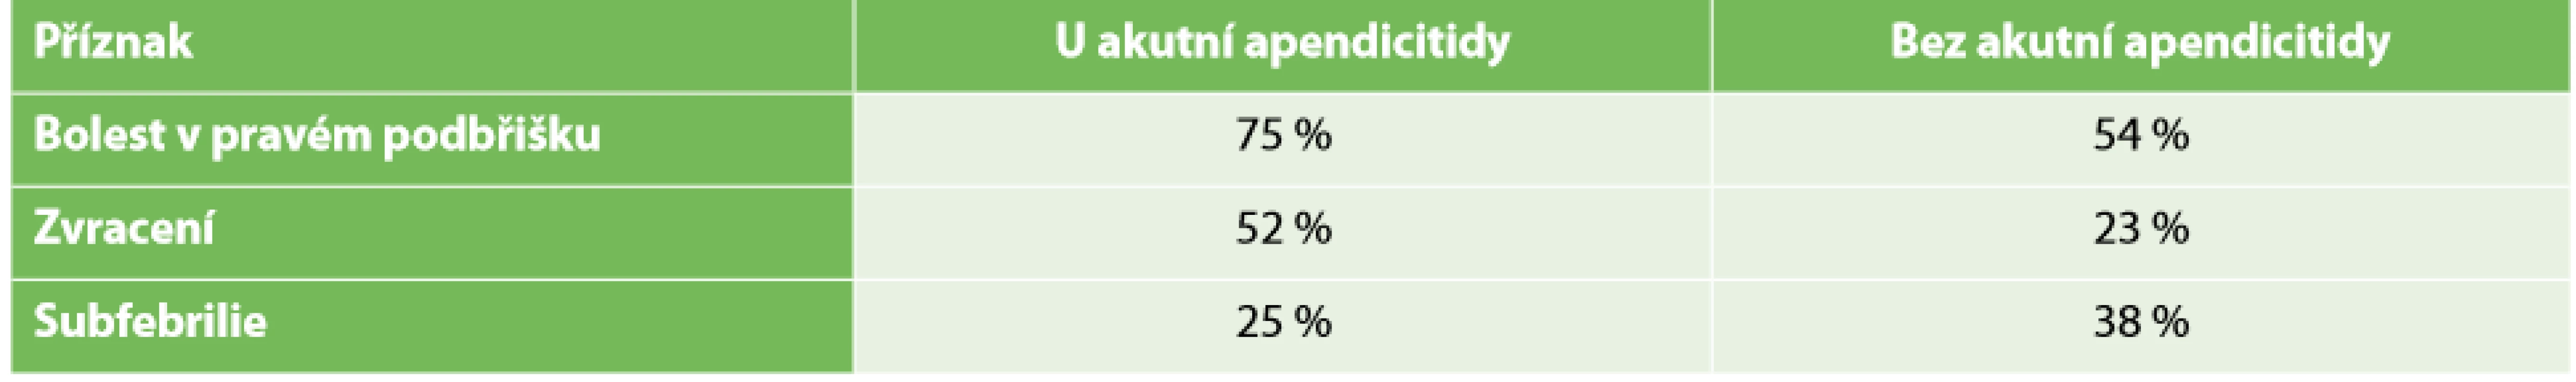 Četnost příznaků apendicitidy (pozitivní vs. negativní diagnóza) <br>
Tab. 1. Frequency of signs of appendicitis (positive vs. negative diagnosis) 